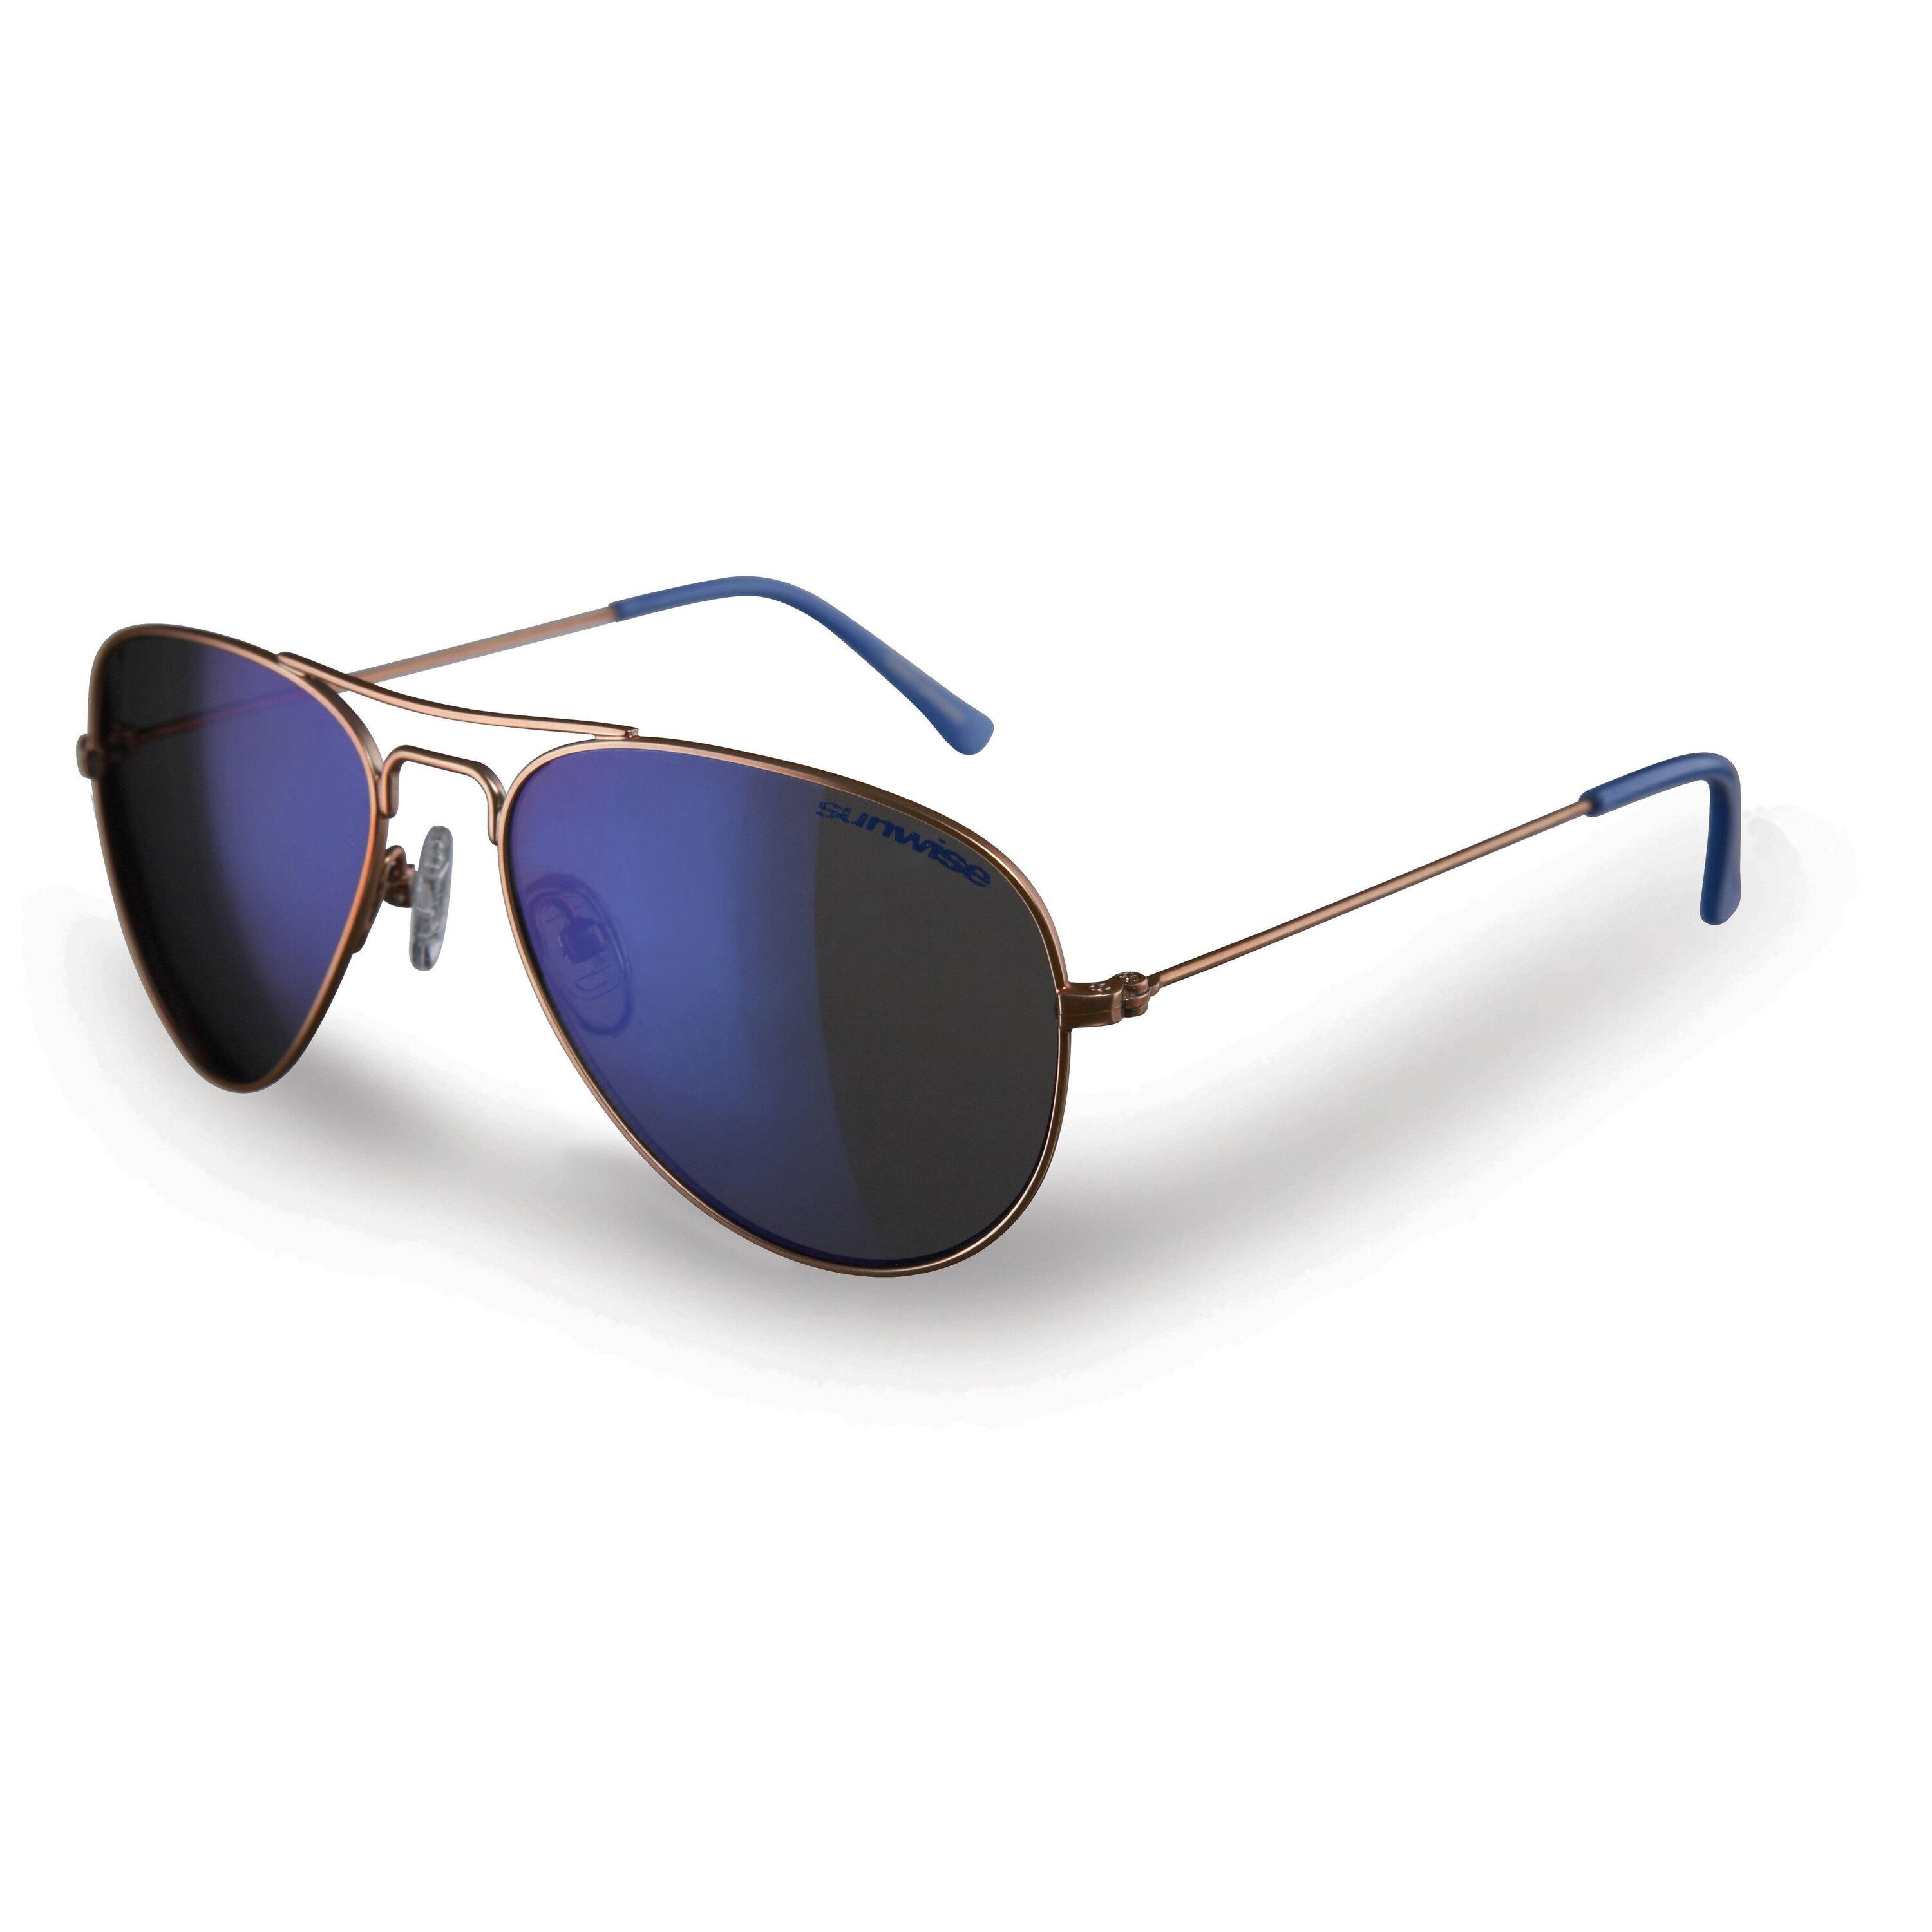 SUNWISE Lancaster Lifestyle Sunglasses - Category 3